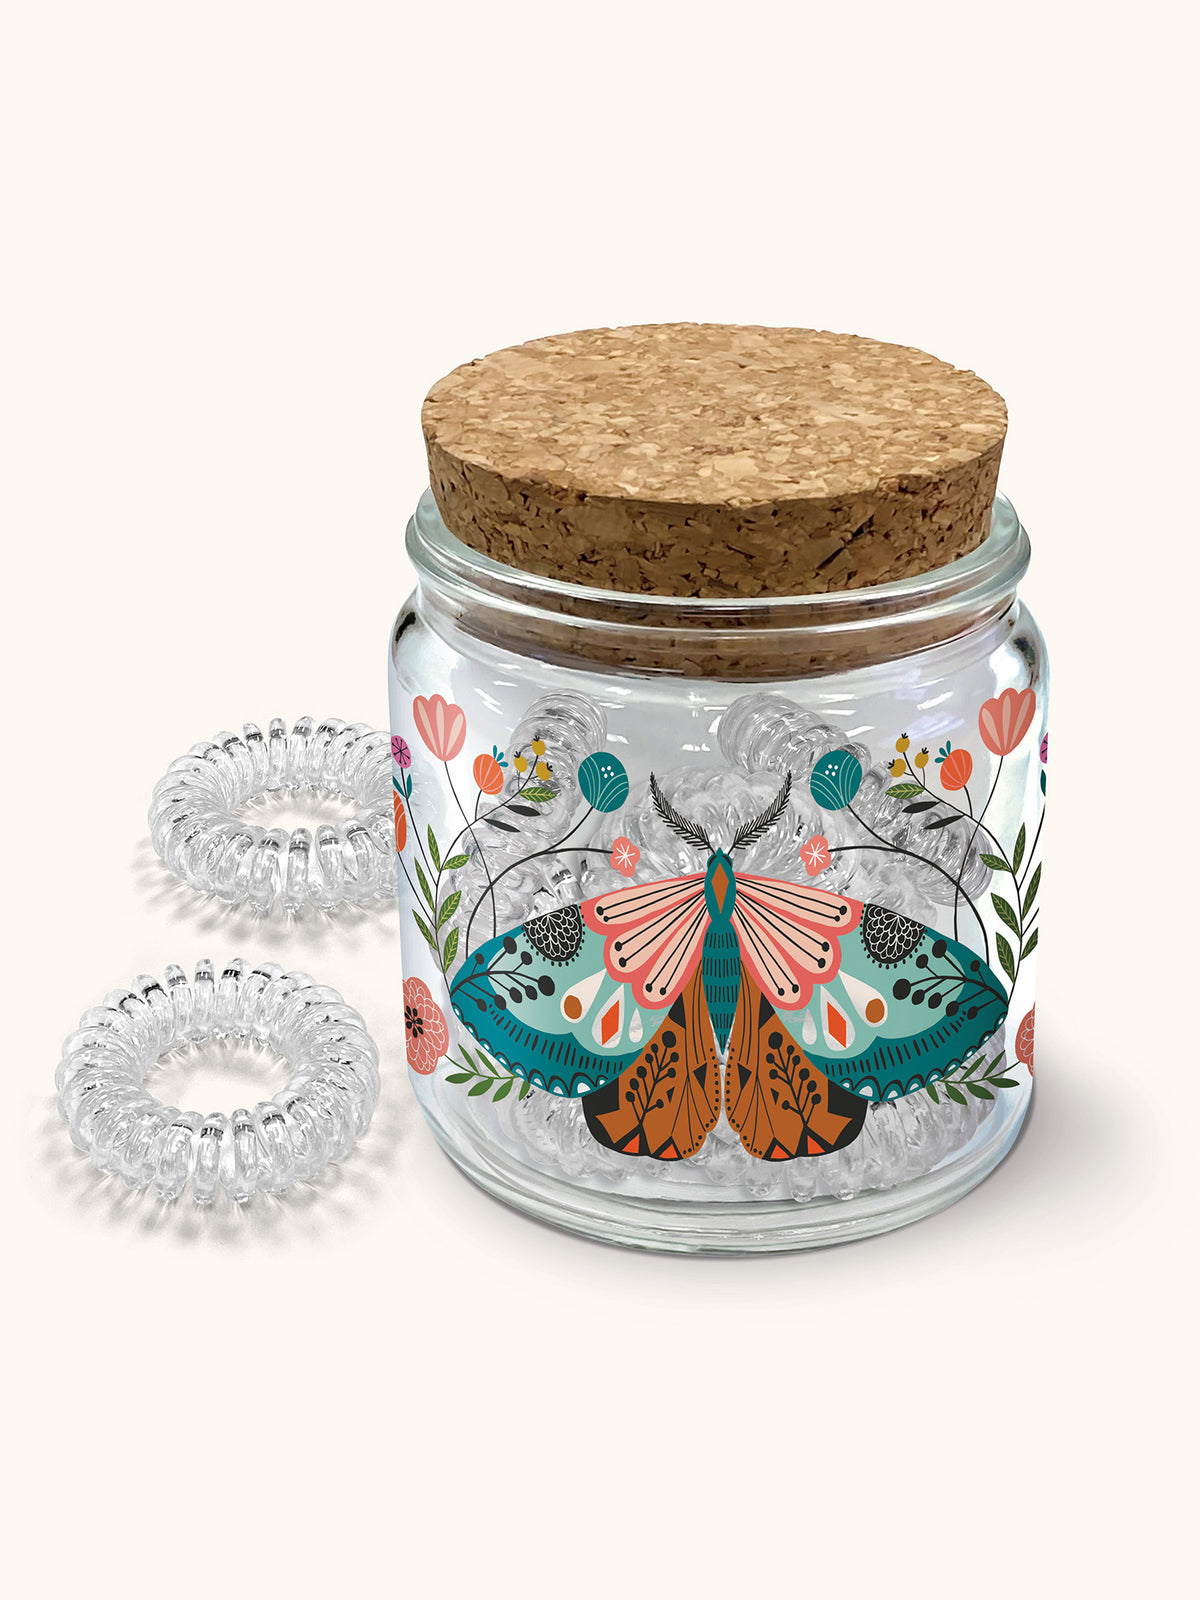 Floral Moth Spiral Hair Ties In Decorative Jar